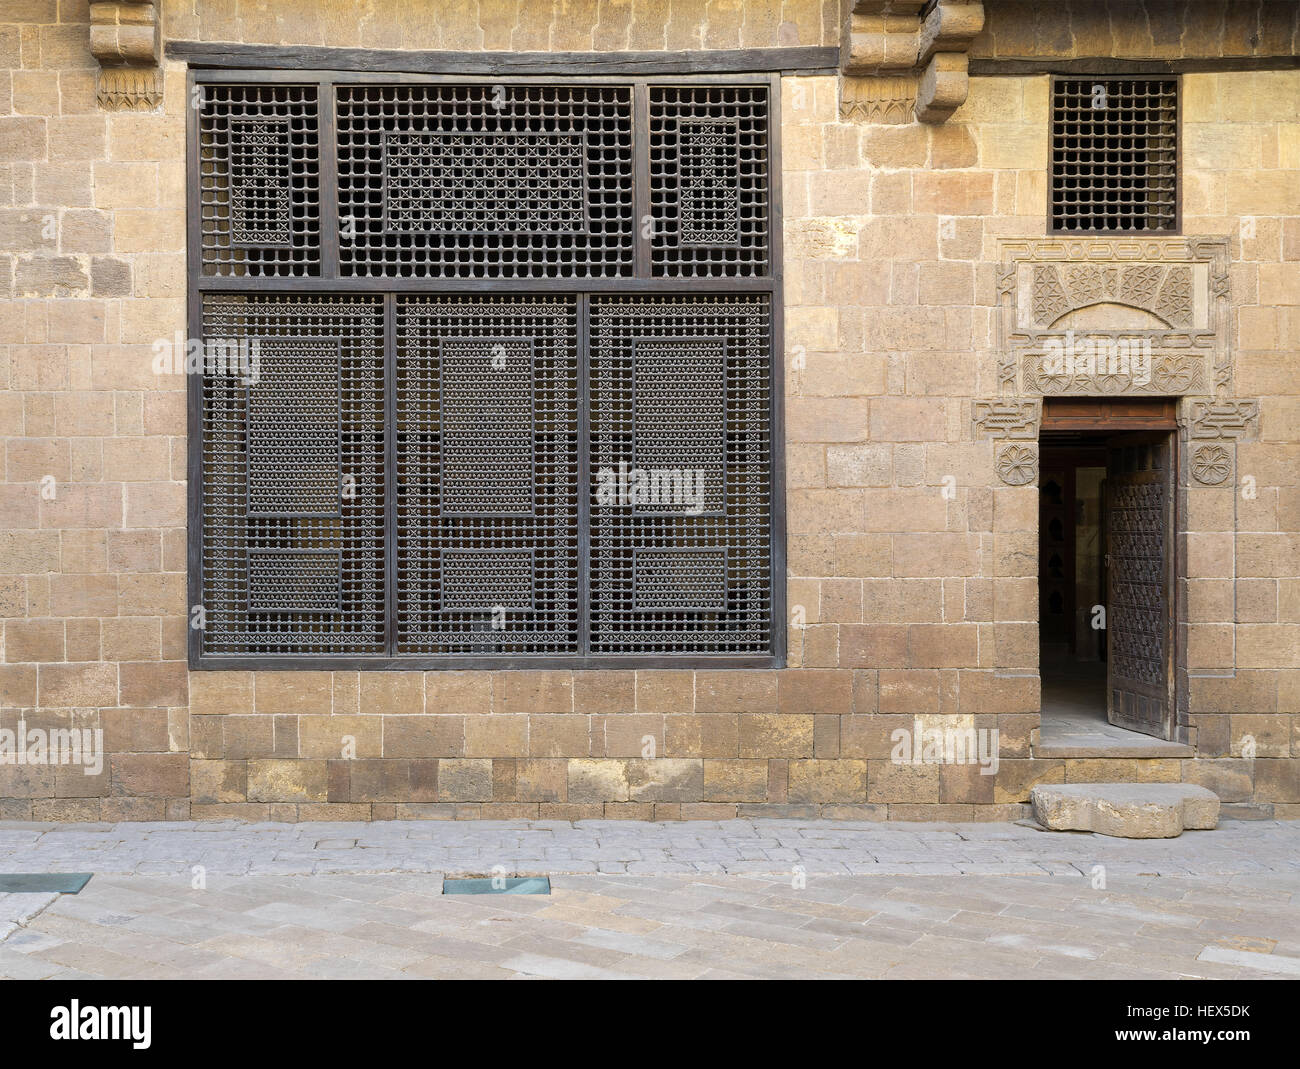 (Façade Mashrabiya fenêtre et ouvrez la porte en bois sur mur de pierre) de Beit (maison) El Harrawi, une vieille époque mamelouke maison historique à l'époque médiévale Le Caire, Egypte Banque D'Images